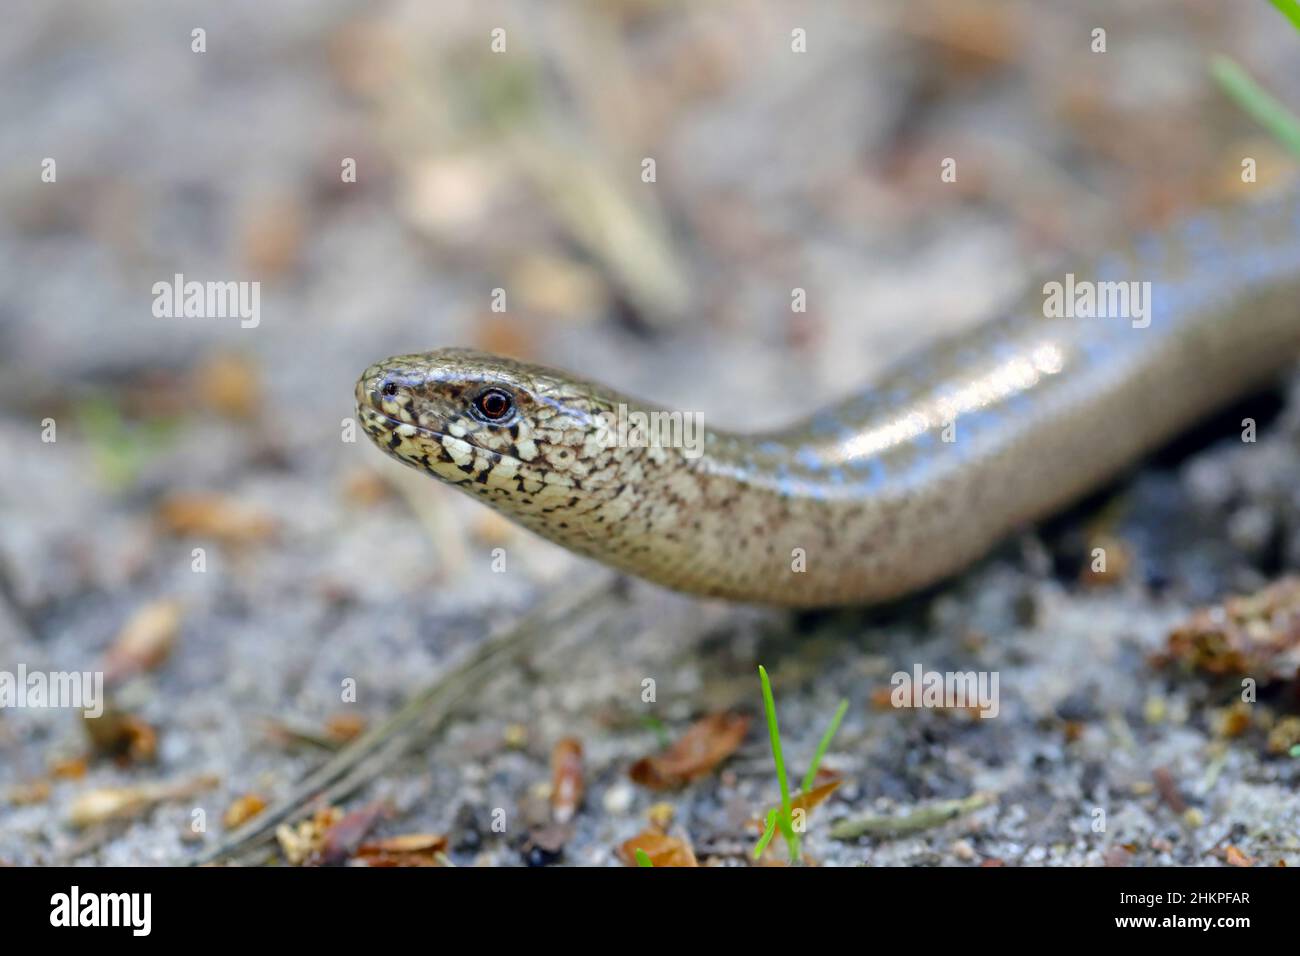 Ein juveniler Anguis fragilis, auch bekannt als langsamer Wurm, langsamwüchsiger Wurm, blinder Wurm oder Glaseidechse und oft für eine Schlange gehalten. Stockfoto